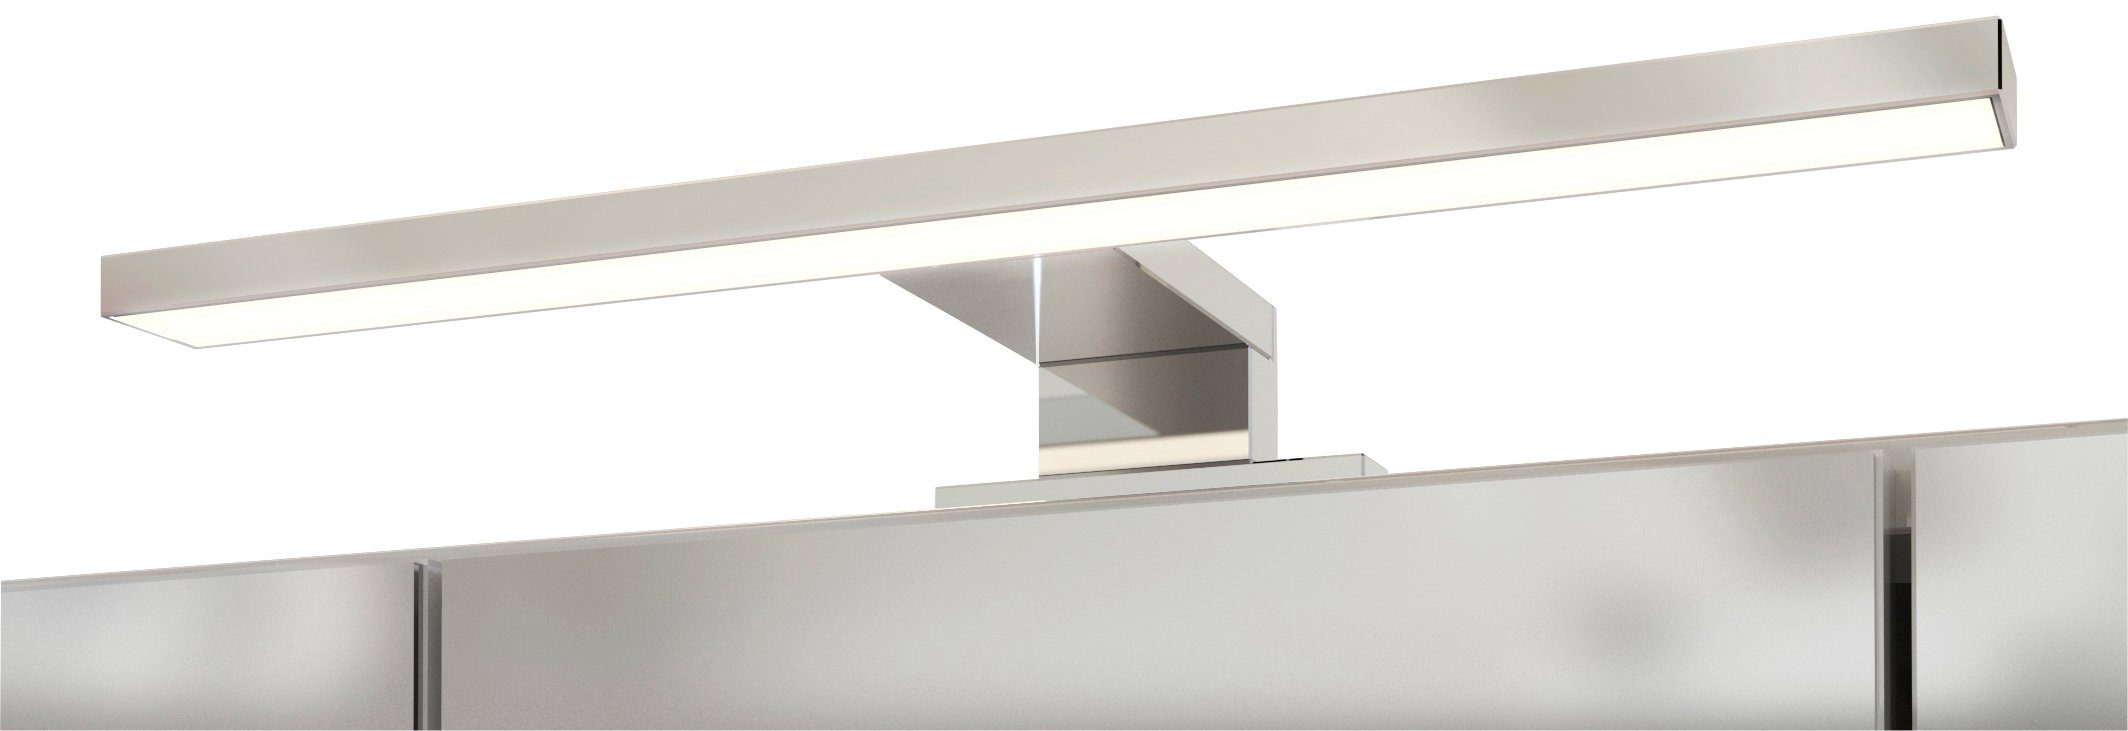 Spiegelschrank MÖBEL Inklusive weiß/weiß HELD LED-Beleuchtung Livorno | weiß